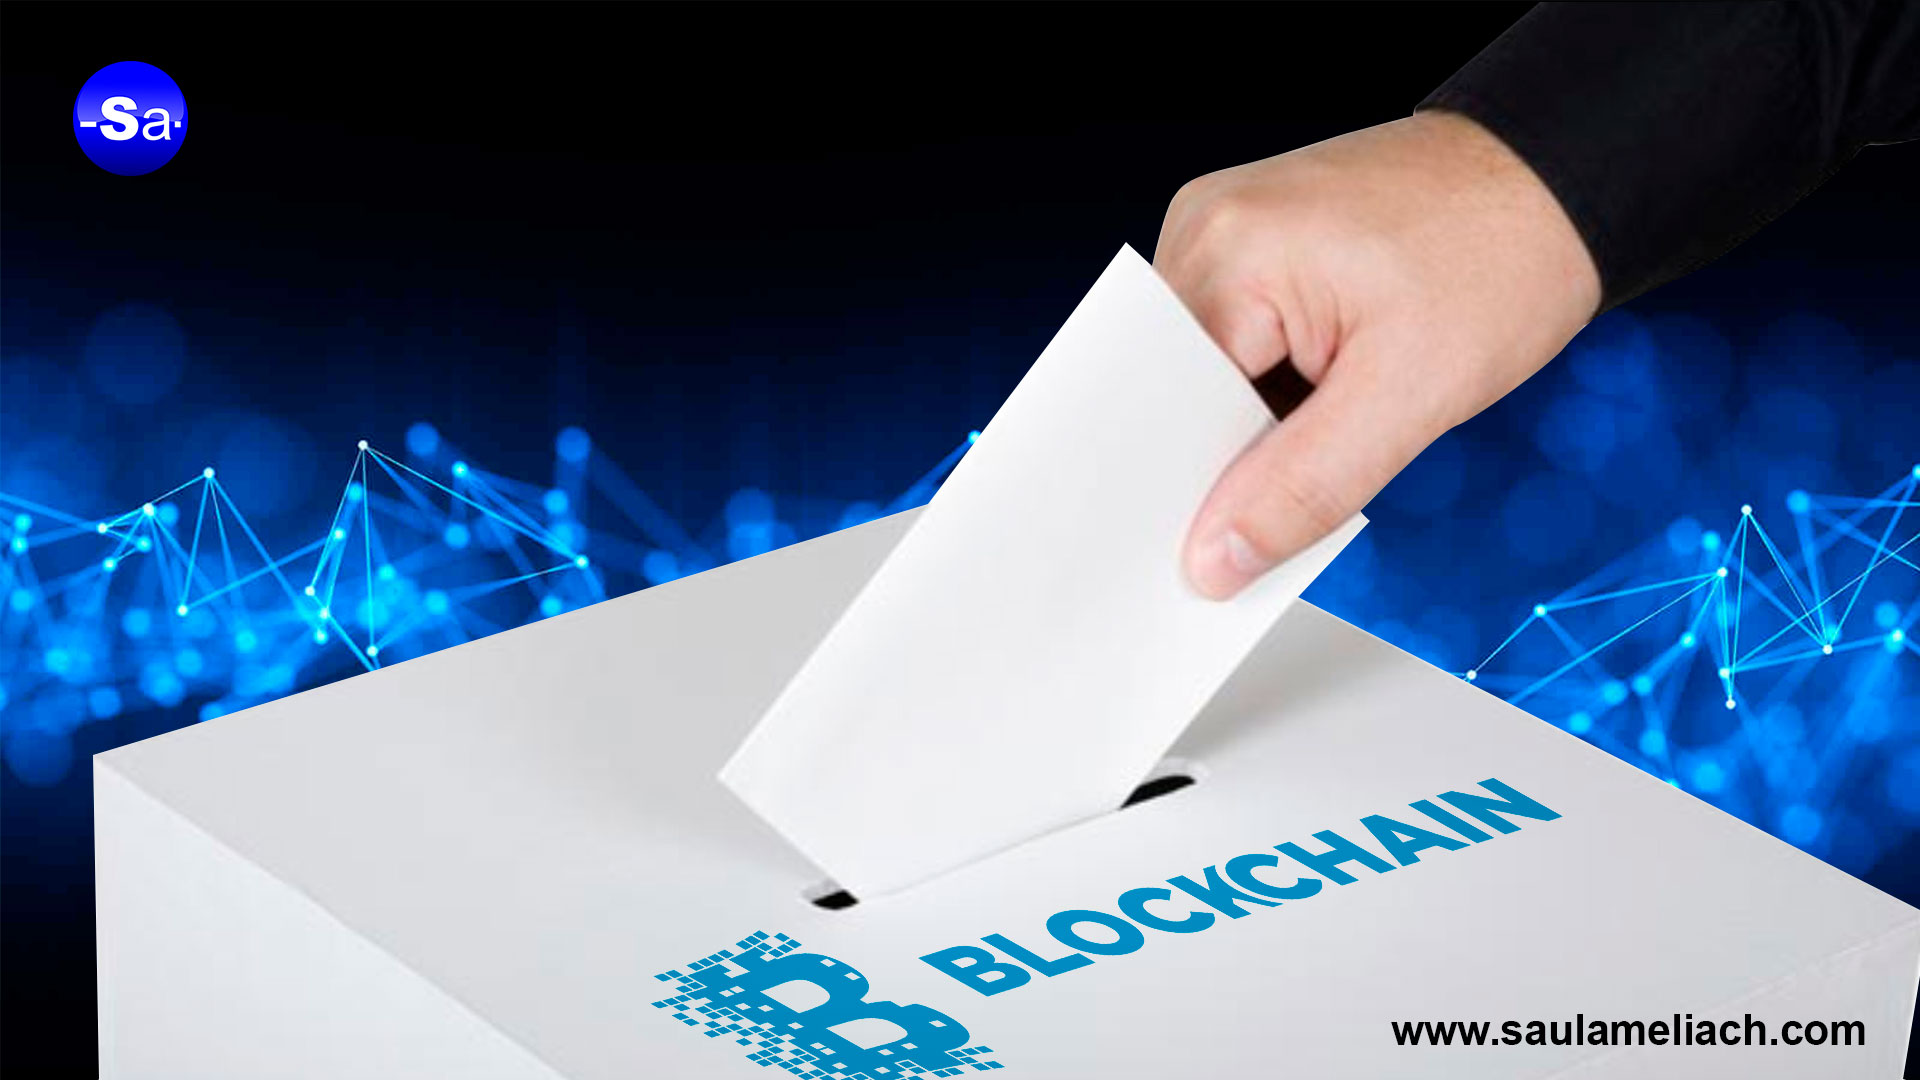 Sistema de votación en Japón basado en tecnología Blockchain